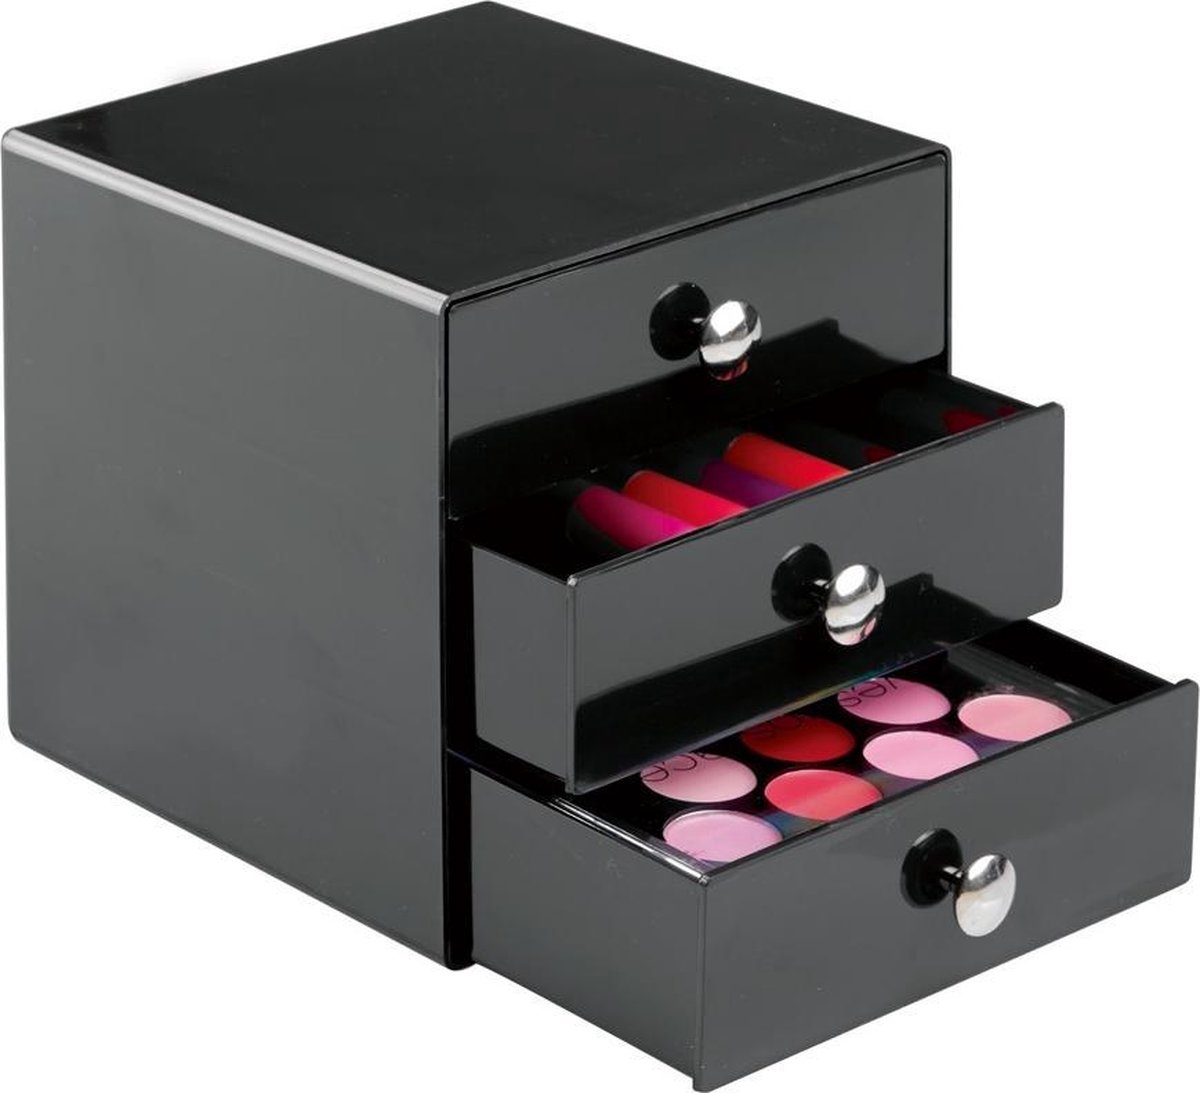 iDesign Make-up kastje 3 lades roze - 35314EU - Sorteervakken, Stapelbaar, Klaar voor gebruik